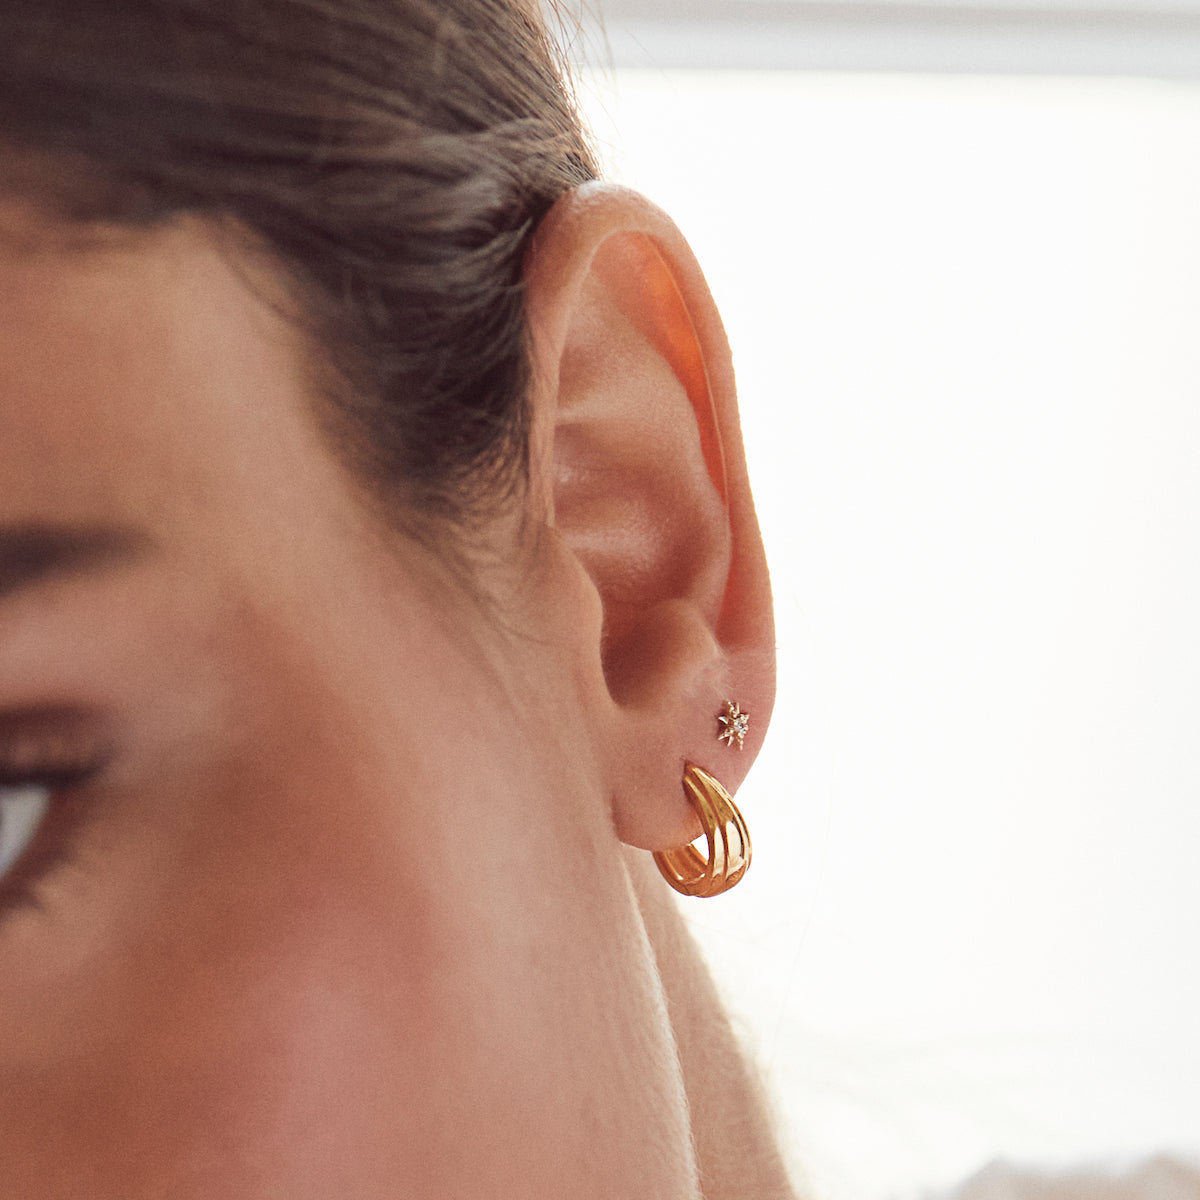 classic vintage huggie hoop earrings in gold